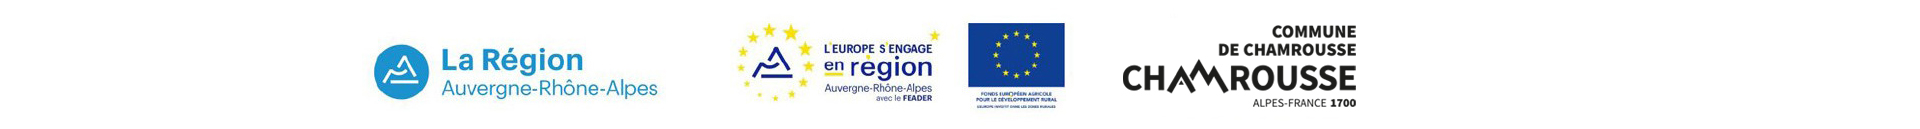 Chamrousse logos soutien institution maison environnement station montagne ete grenoble isère alpes france - © DR